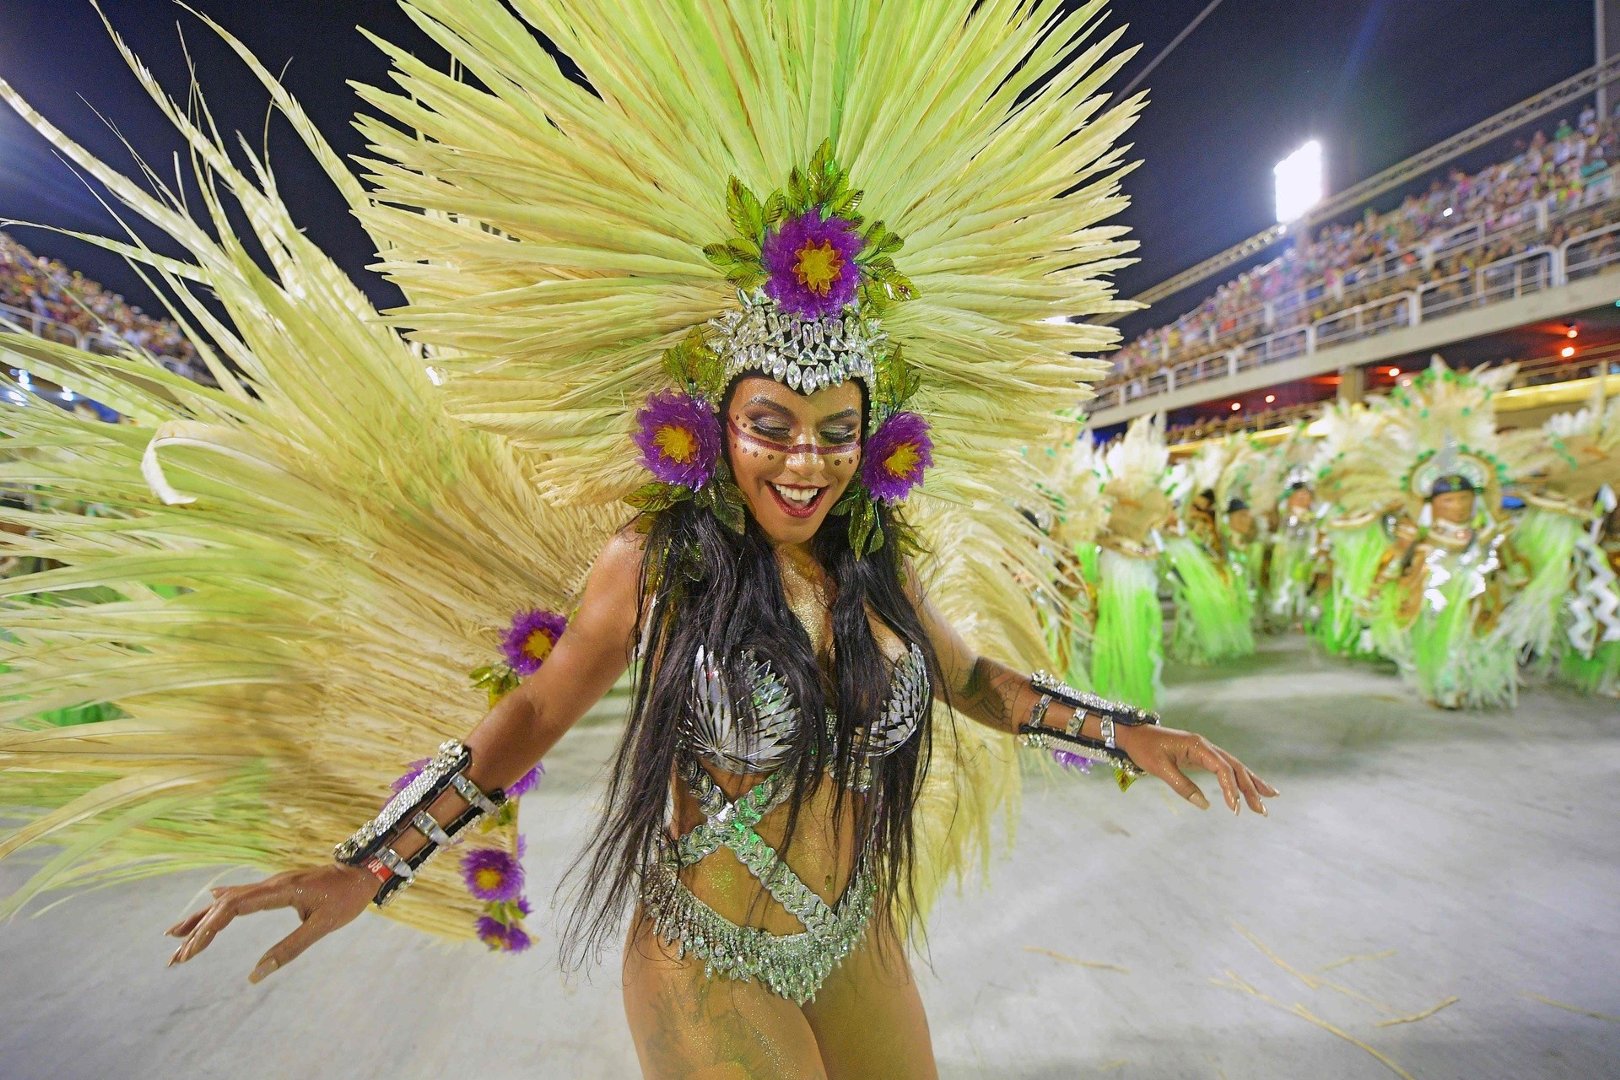 Karnawał w Rio de Janeiro 2018 ZDJĘCIA Piękne tancerki w seksownych  strojach, Katarzyna Stocka "Kashira" na sambodromie [WIDEO] | Portal i.pl